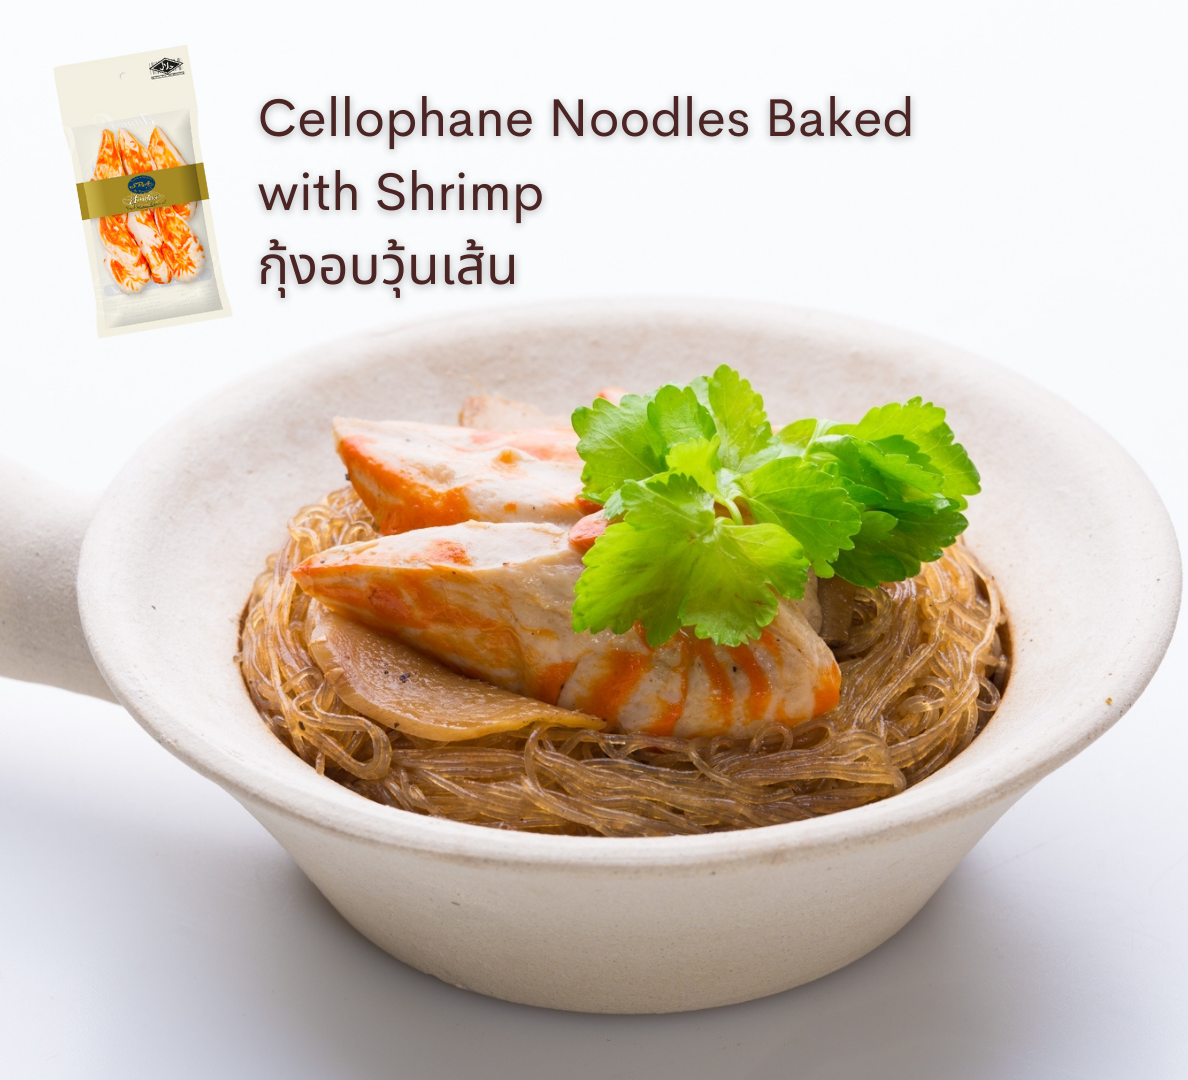 เมนูอาหารเจ-มังสวิรัติ spa foods cellophane noodles baked with shrimp กุ้งอบวุ้นเส้น-vegan